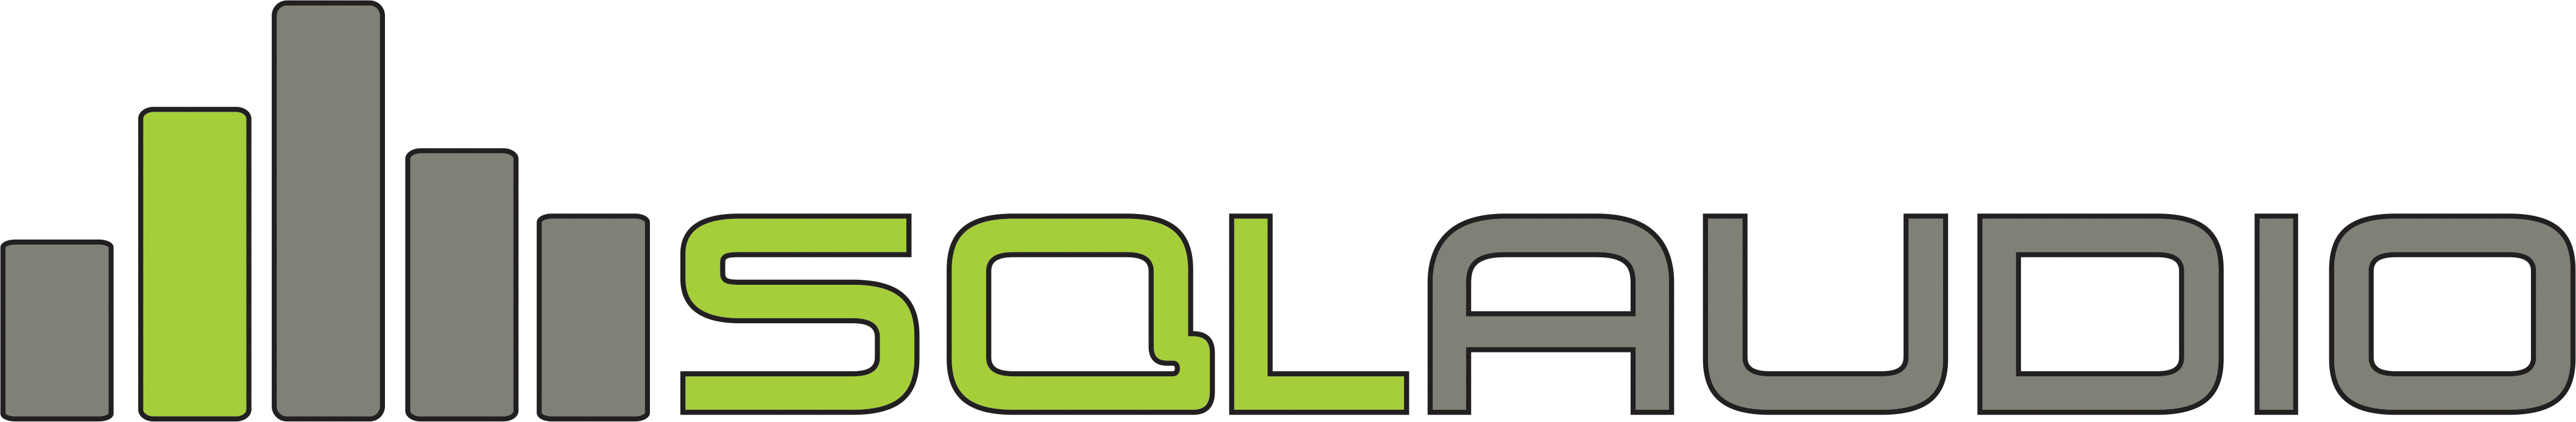 Спектрум групп. Немецкий бренд аудио SQL. POPSQL лого. Абис Mark SQL логотип. Тетрадка с логотипом SQL.